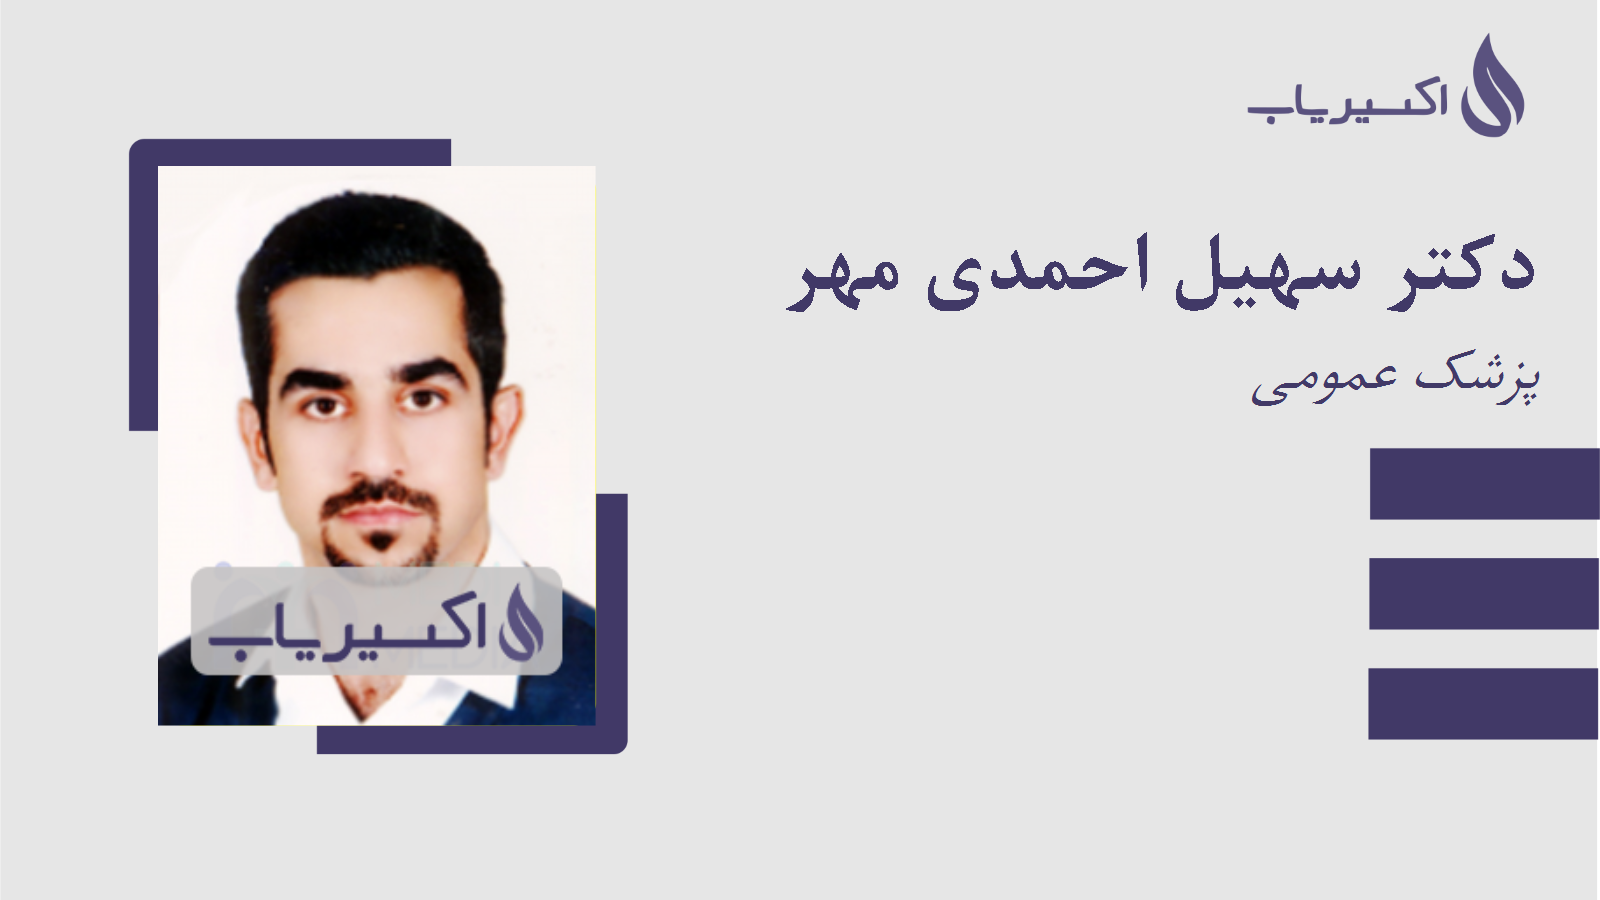 مطب دکتر سهیل احمدی مهر